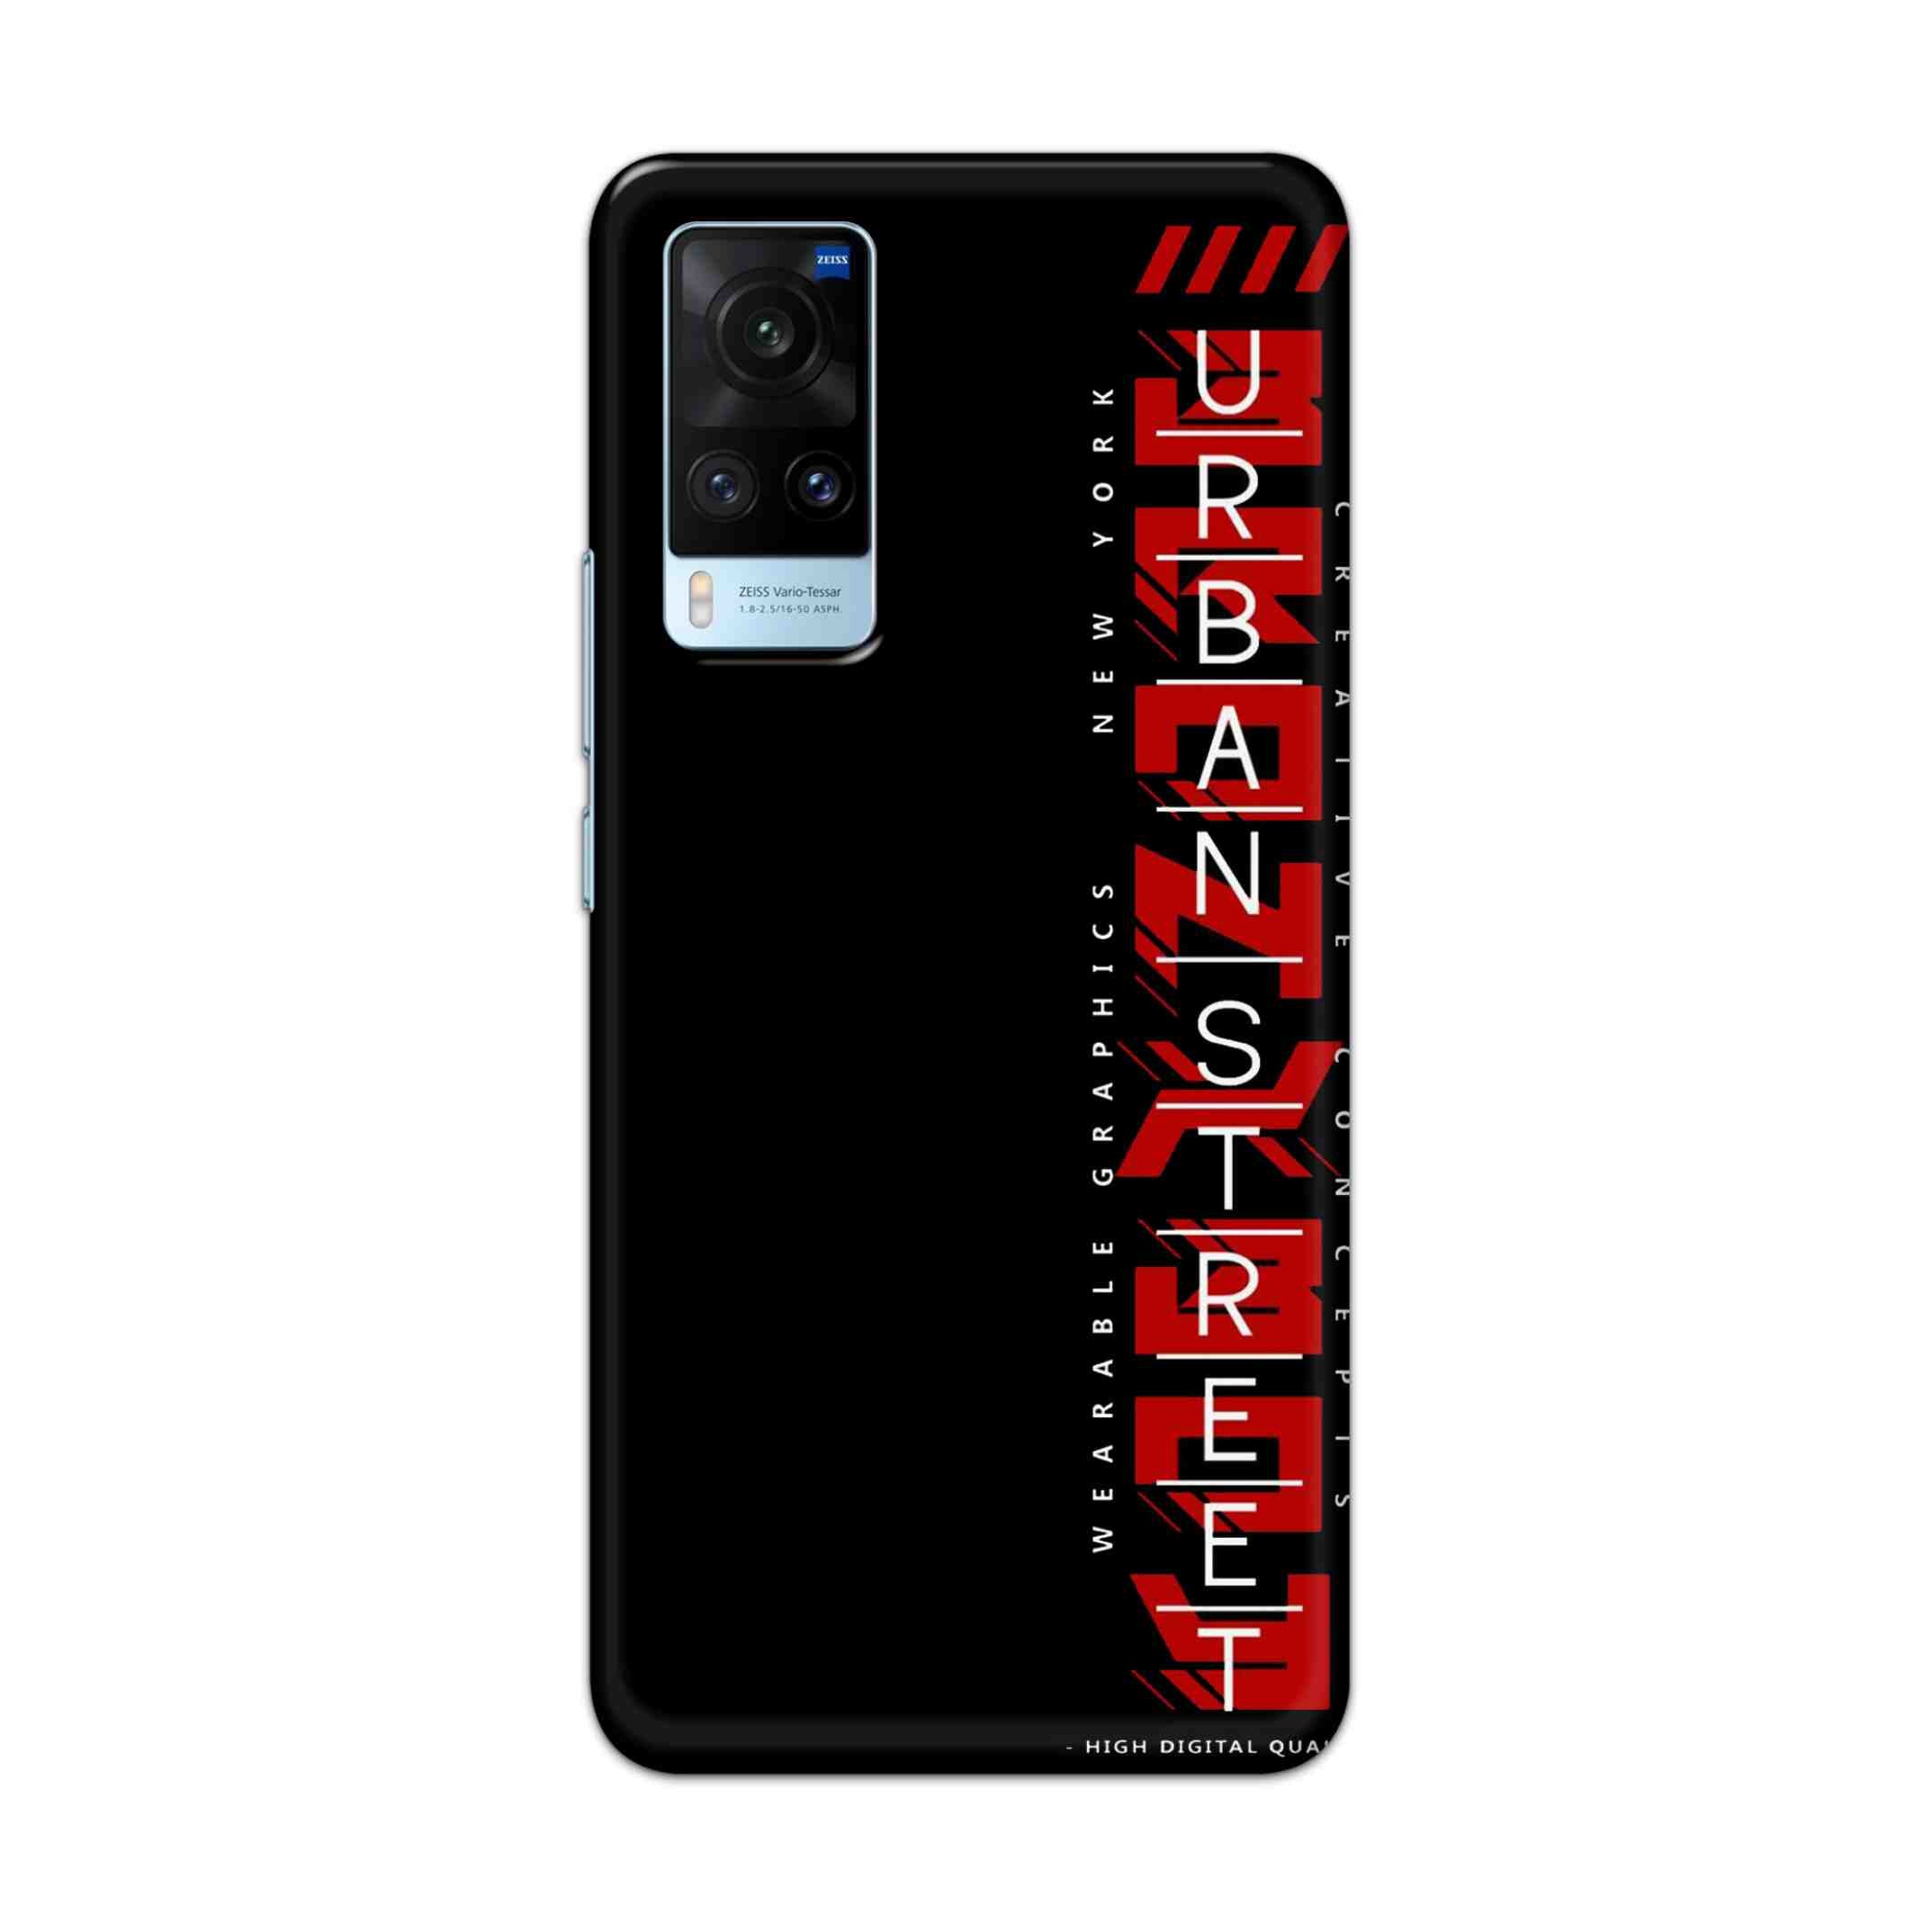 Buy Urban Street Hard Back Mobile Phone Case Cover For Vivo X60 Online